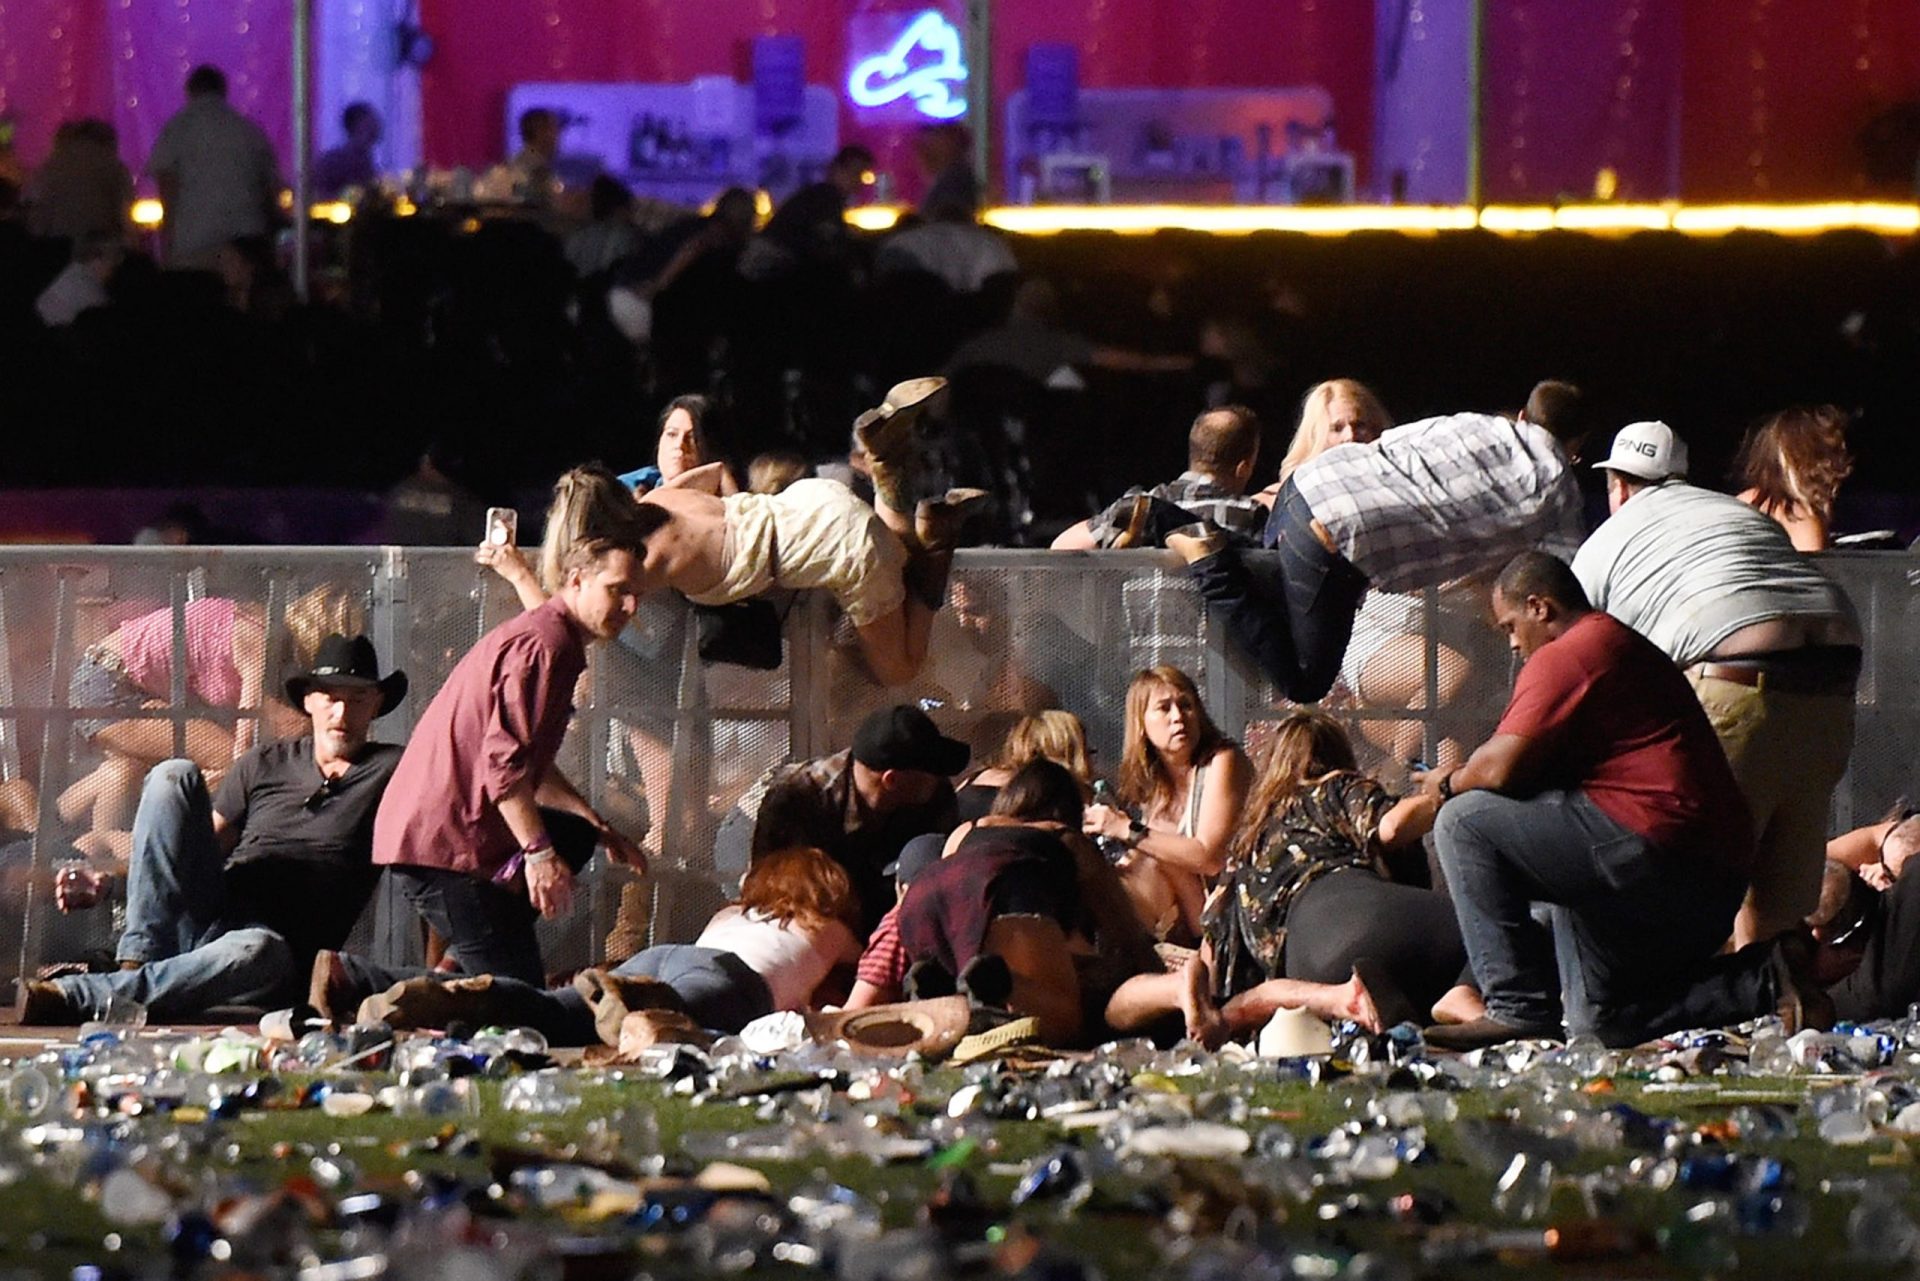 Vídeos mostram multidão em pânico durante tiroteio em Las Vegas